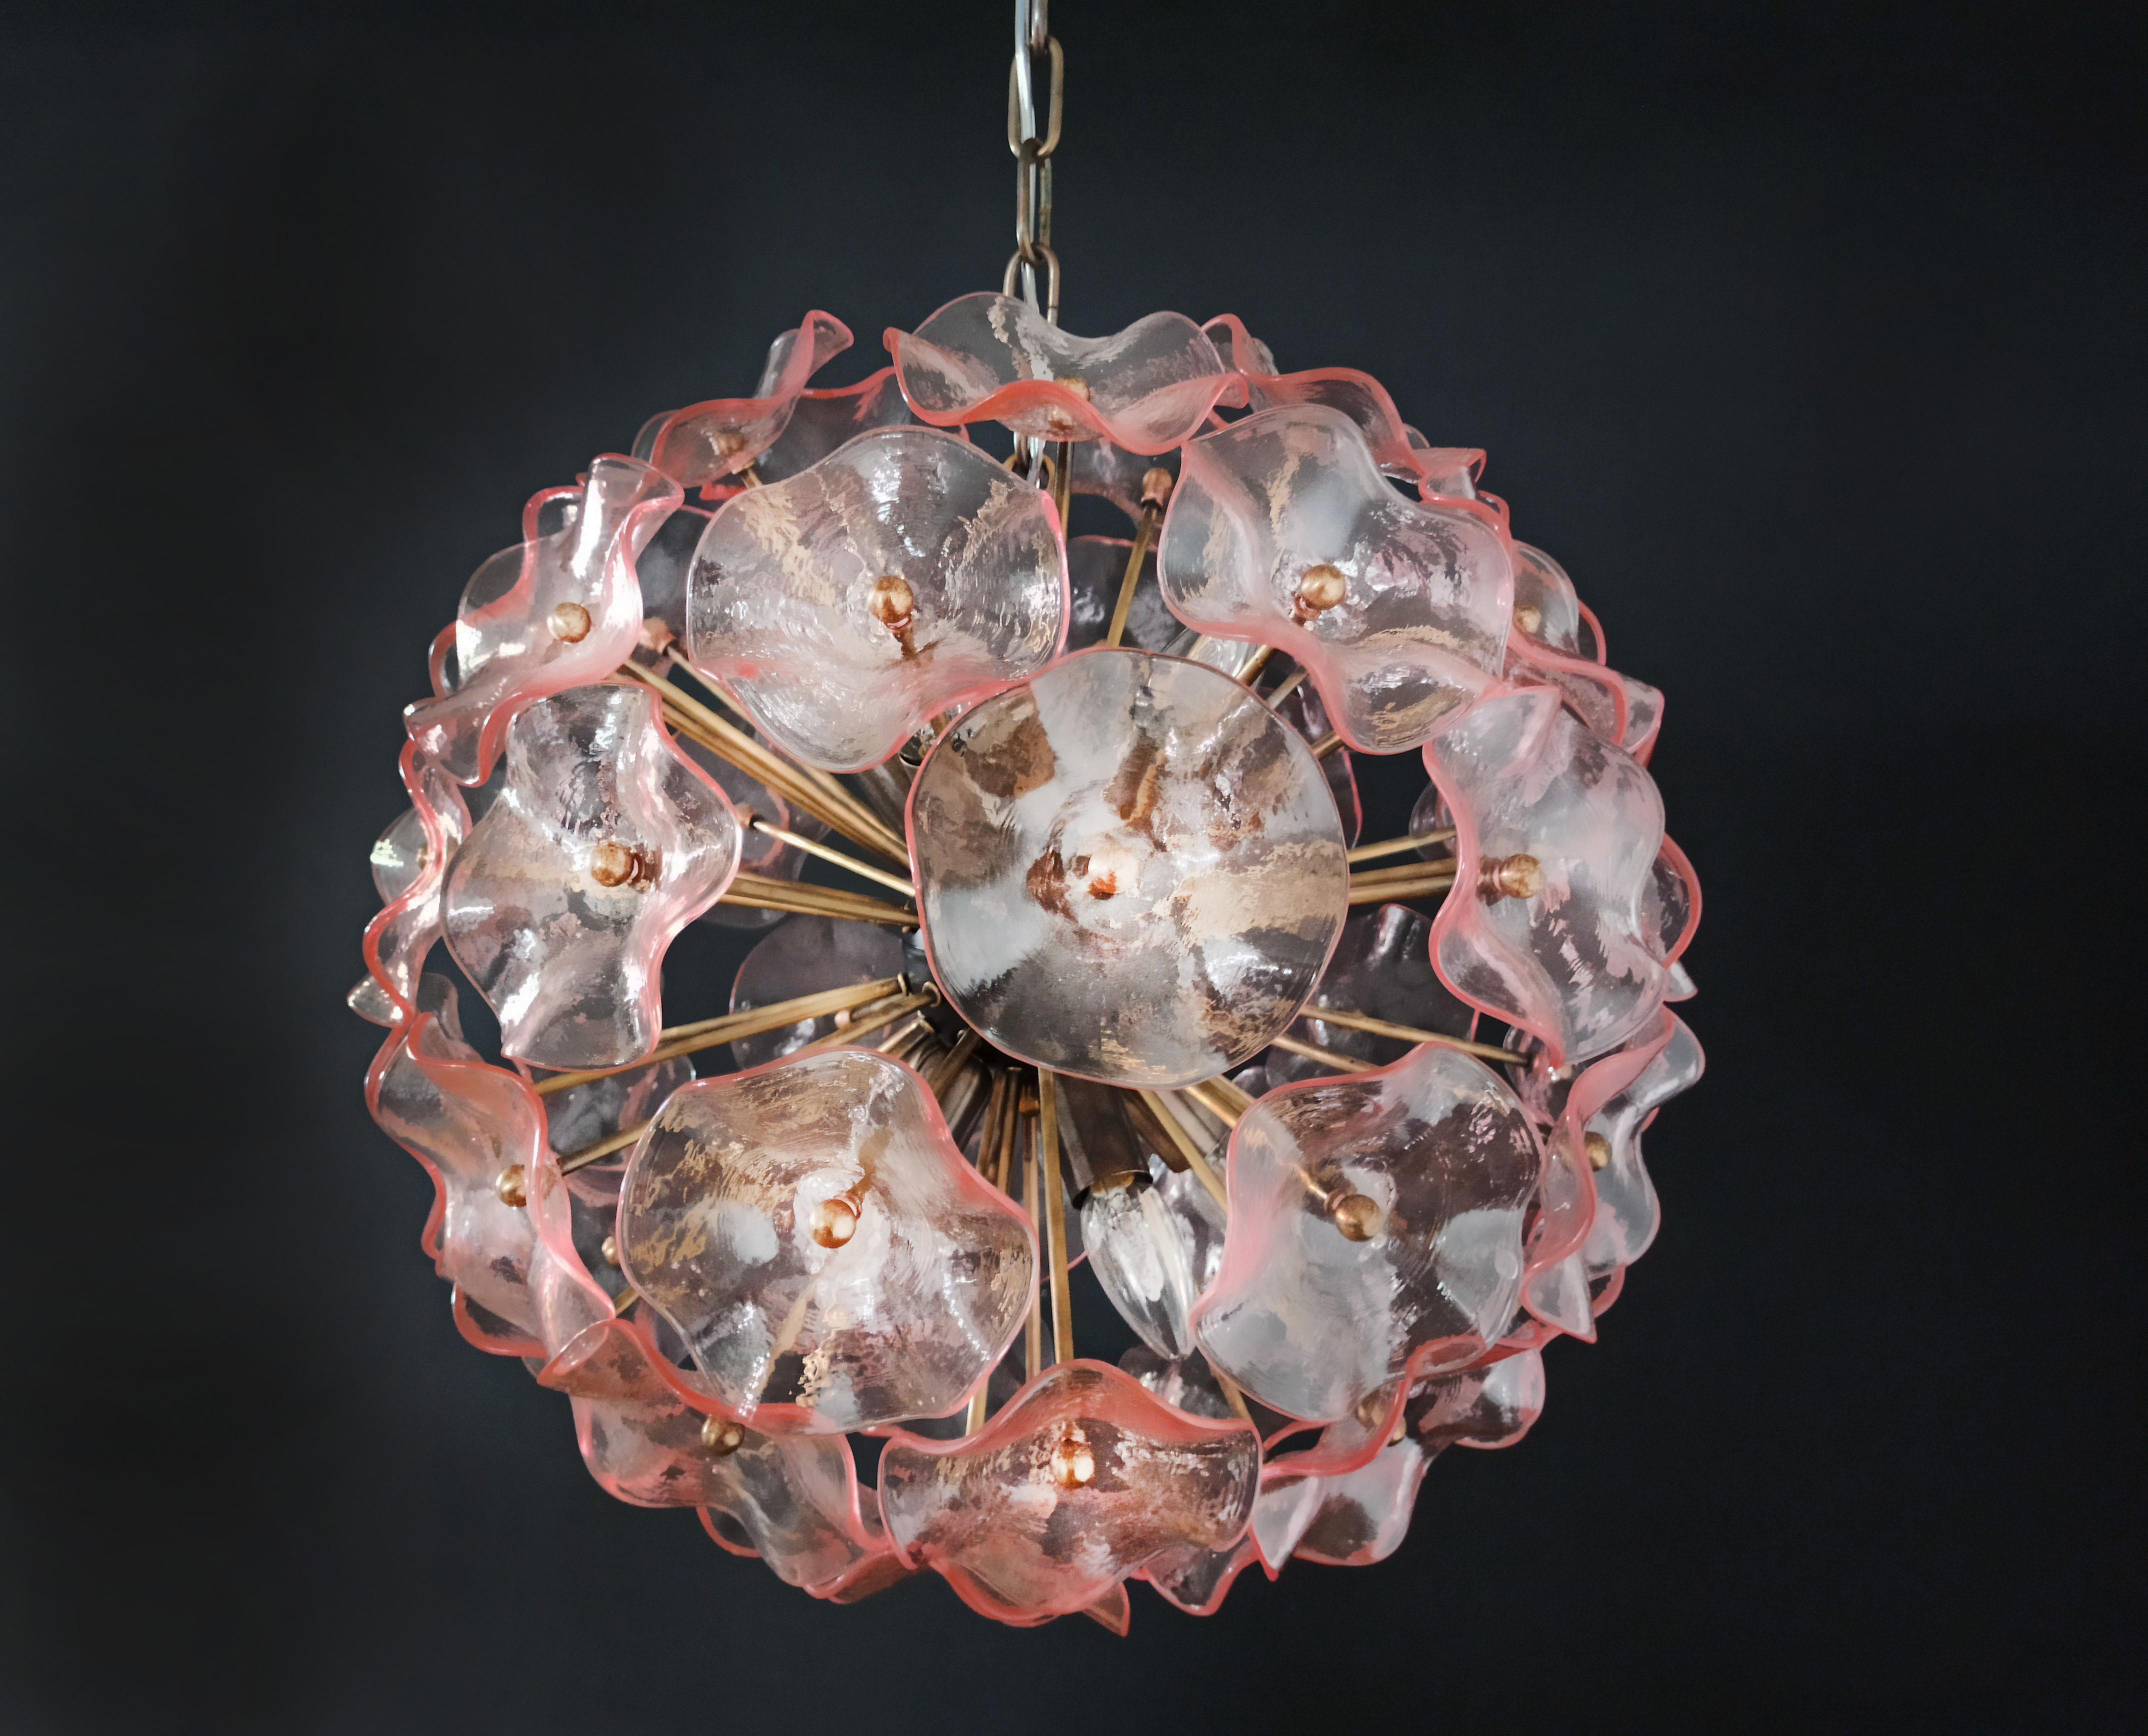 Étonnant lustre italien Sputnik en cristal vintage composé de 51 cristaux roses dans une monture en métal laiton bruni.
Période : Années 1970 / Années 1980
Dimensions : 41,30 pouces (105 cm) de hauteur avec chaîne ; 17,70 pouces (45 cm) de hauteur